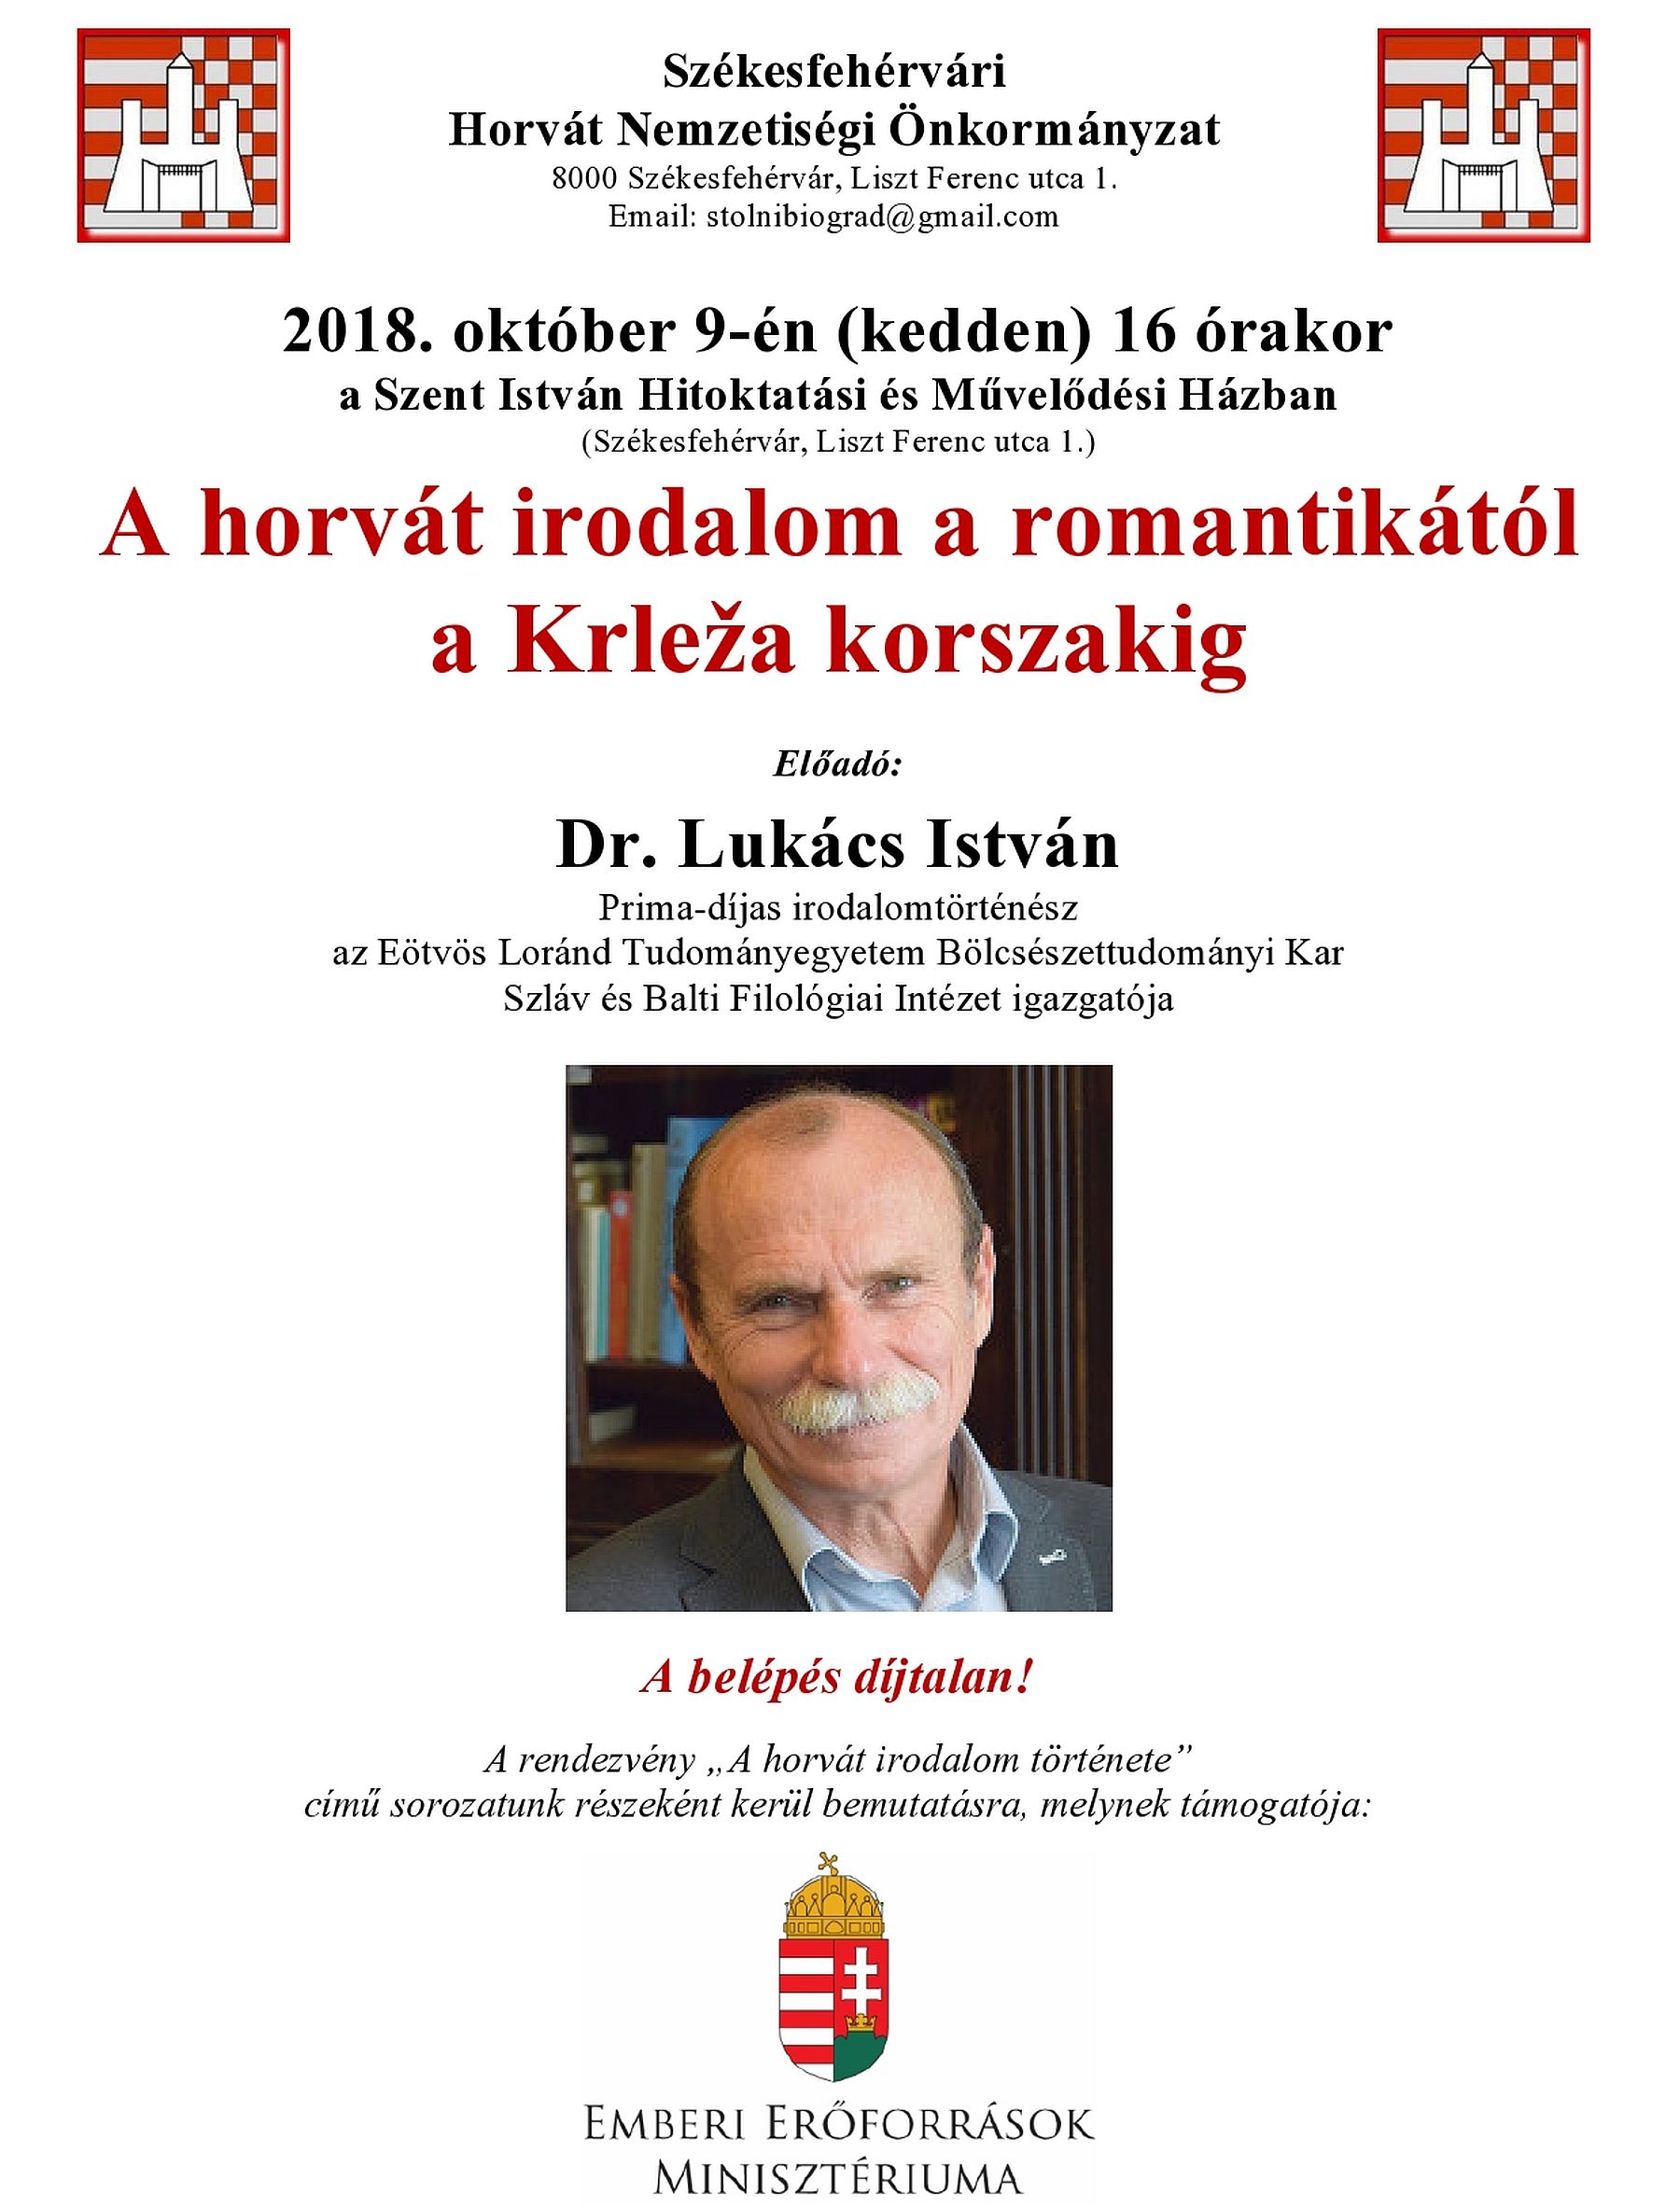 A horvát irodalom a romantikától a Krleža korszakig - Dr. Lukács István előadása